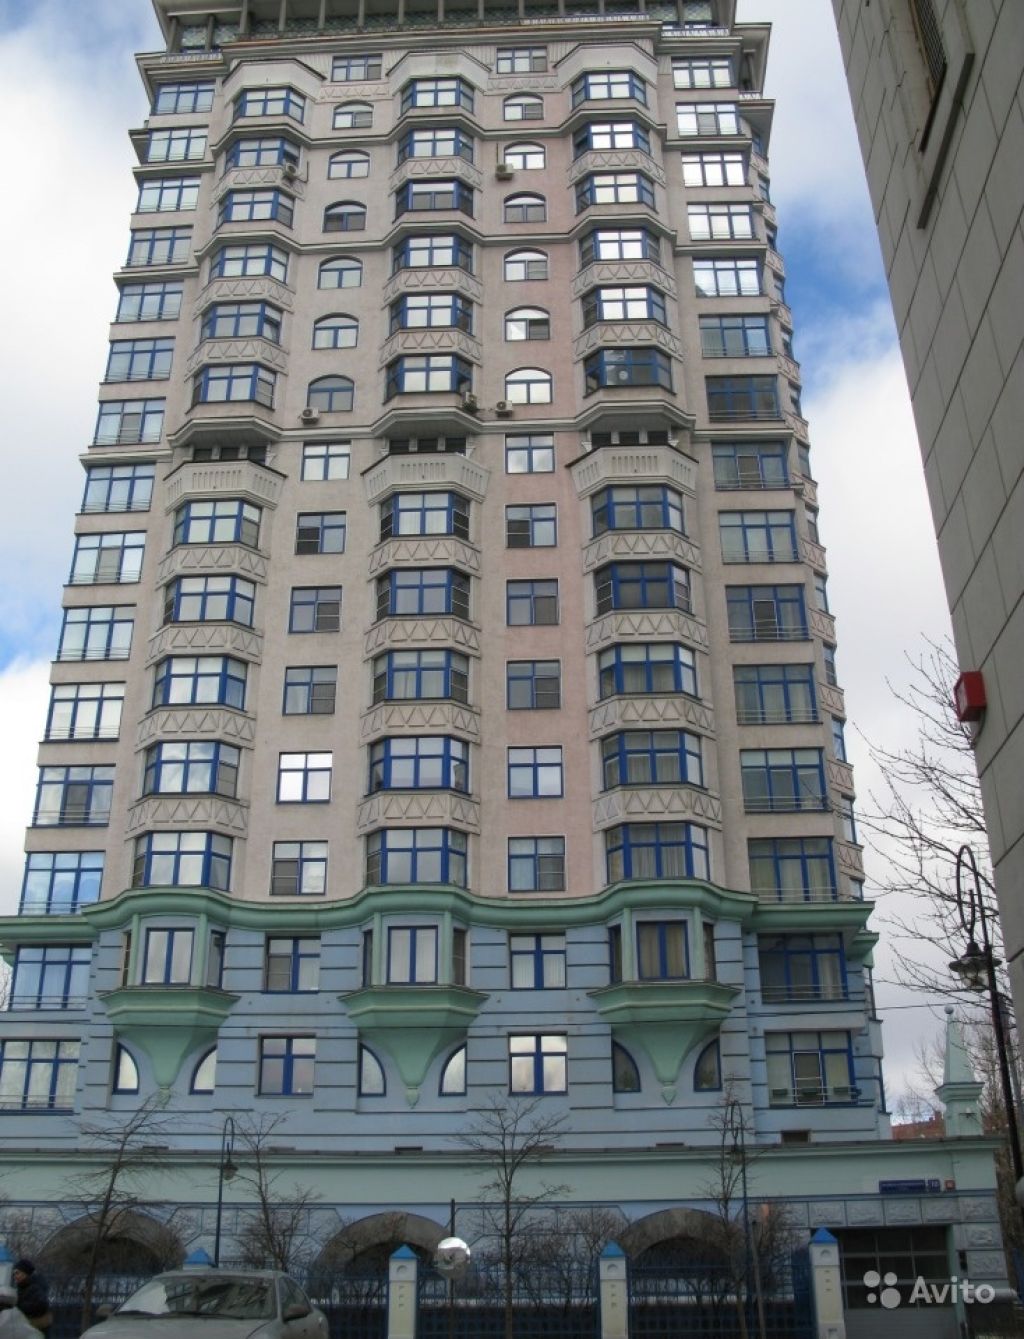 Сдам квартиру 3-к квартира 133 м² на 5 этаже 20-этажного монолитного дома в Москве. Фото 1